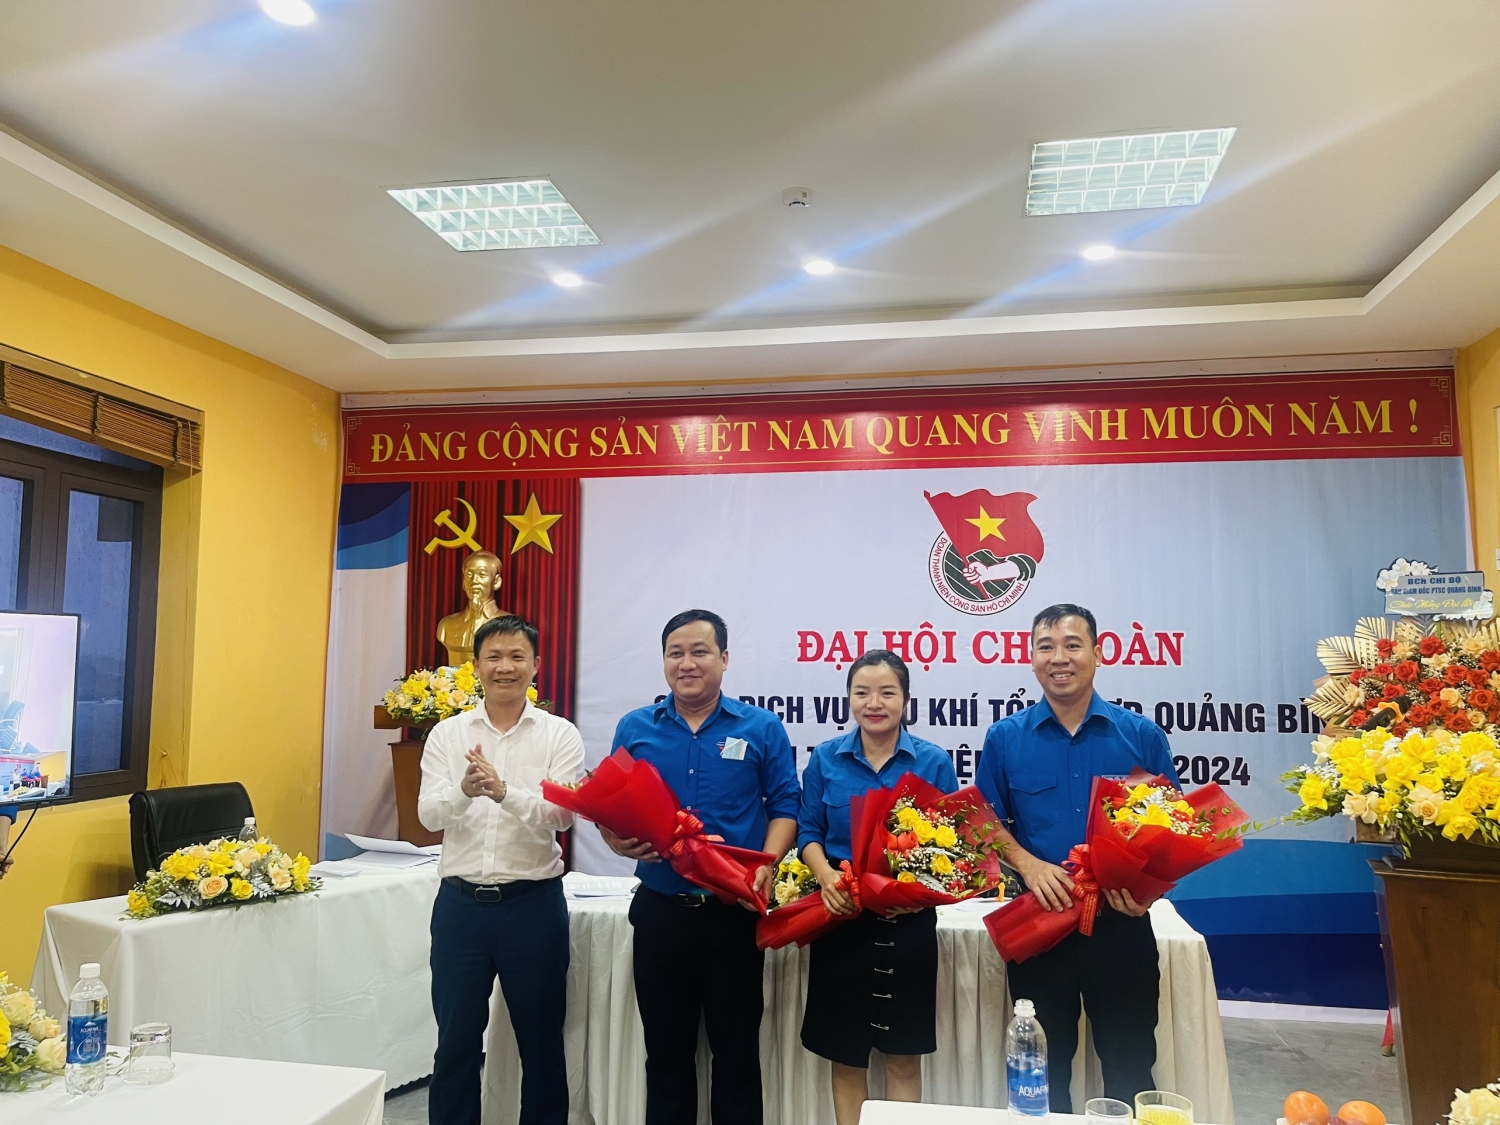 Đoàn Thanh niên PTSC Quảng Bình tổ chức thành công Đại hội Chi đoàn lần thứ V, nhiệm kỳ 2022-2024